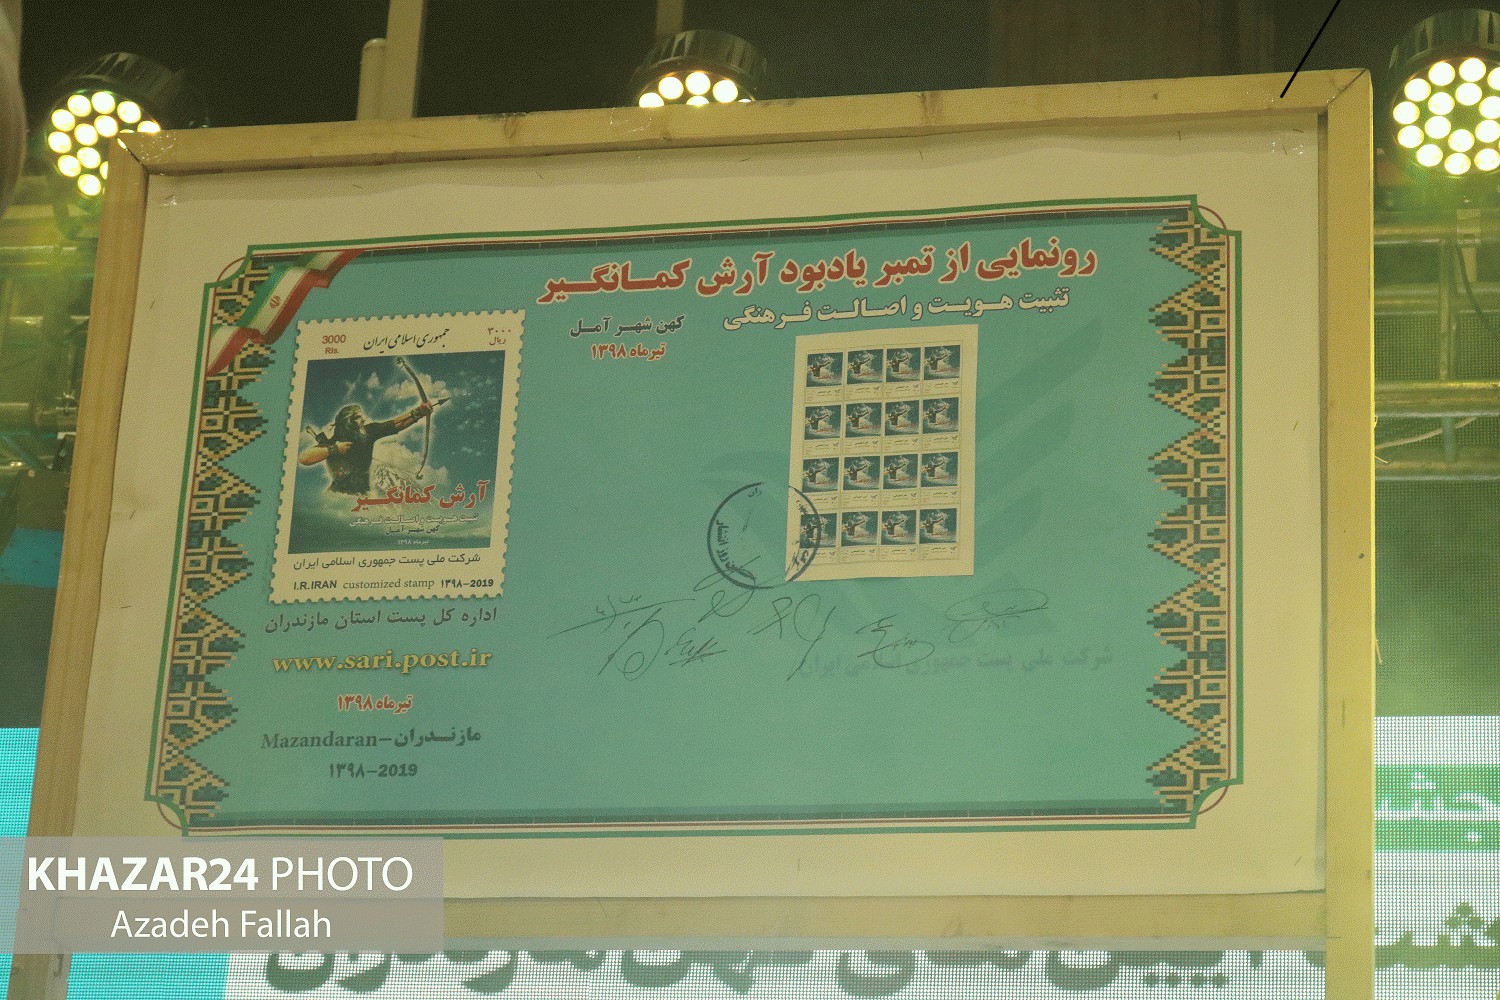 رونمایی از تمبر ملی آرش کمانگیر در آمل با حضور سالار عقیلی